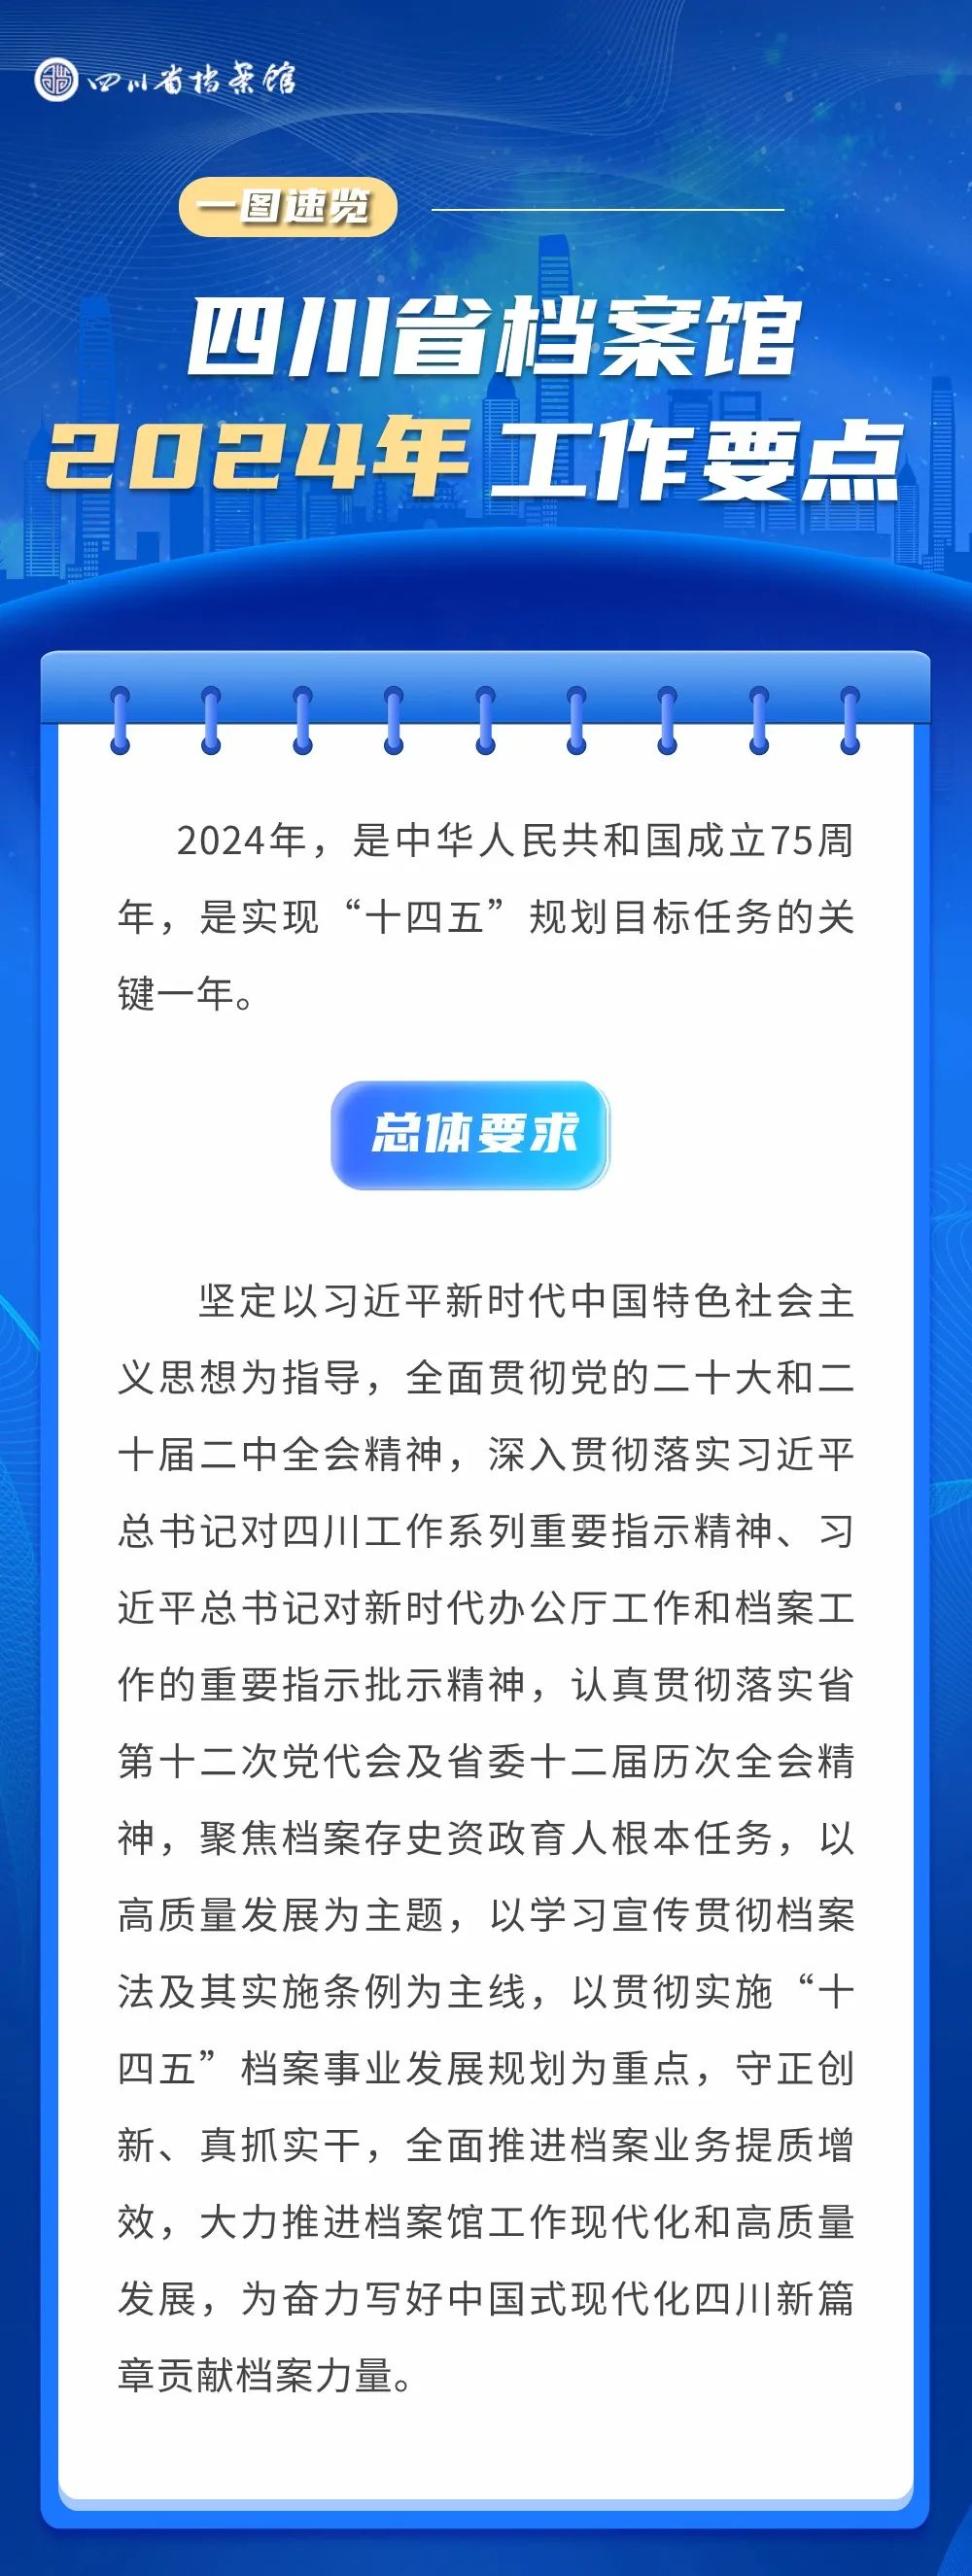 四川省档案馆2024年工作要点